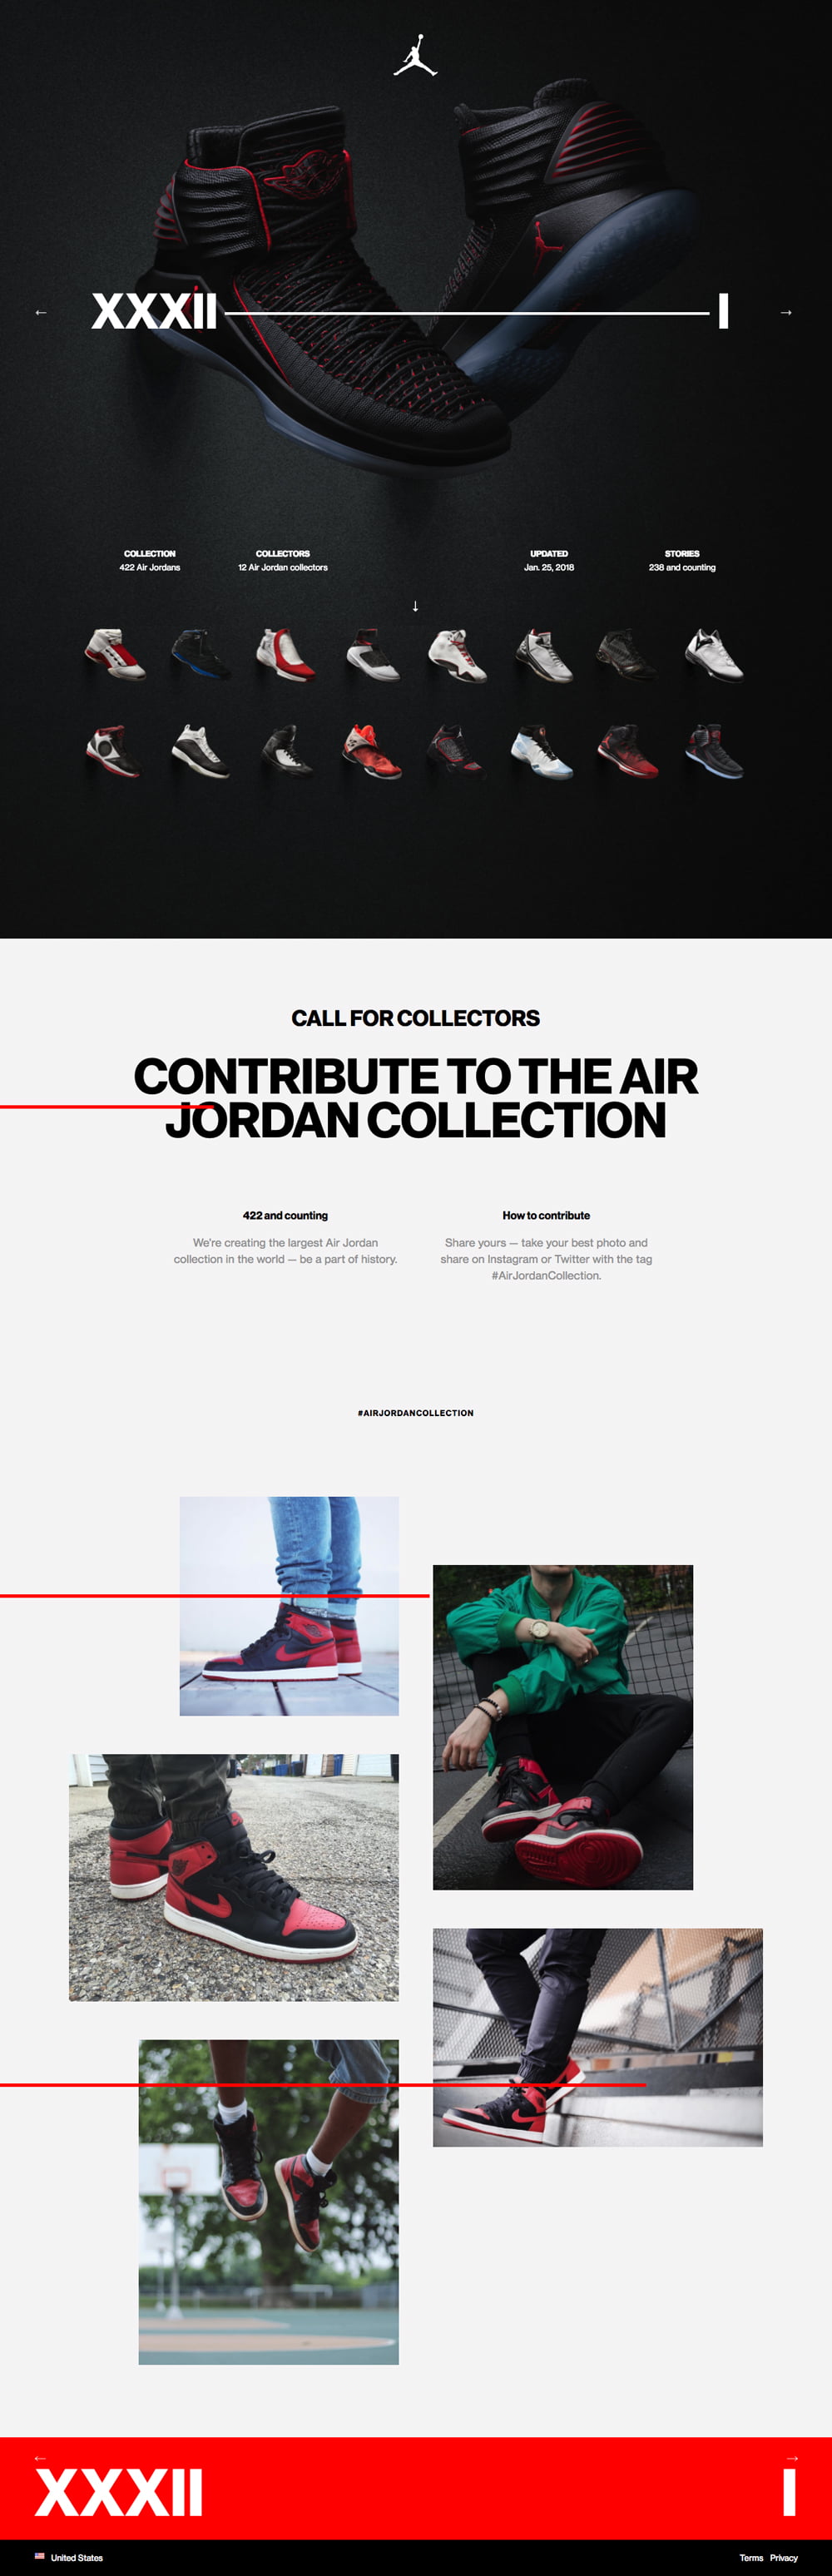 retro jordan collection